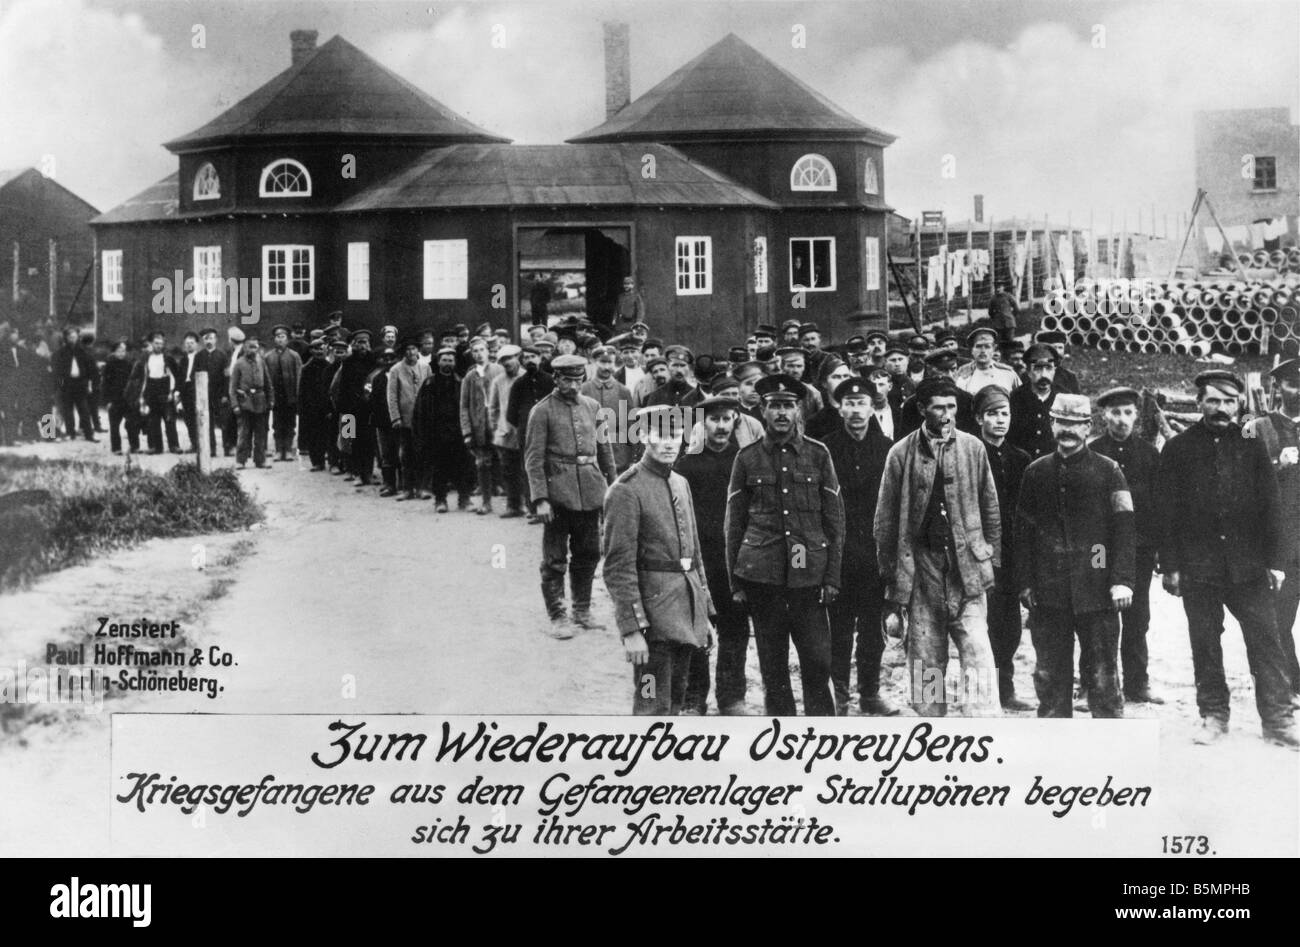 9 1916 0 0 A3 E Prisonniers de guerre au camp de Stalluponen Guerre Mondiale 1 prisonniers de guerre au camp de prisonniers à Stalluponen la Prusse de l'i Banque D'Images